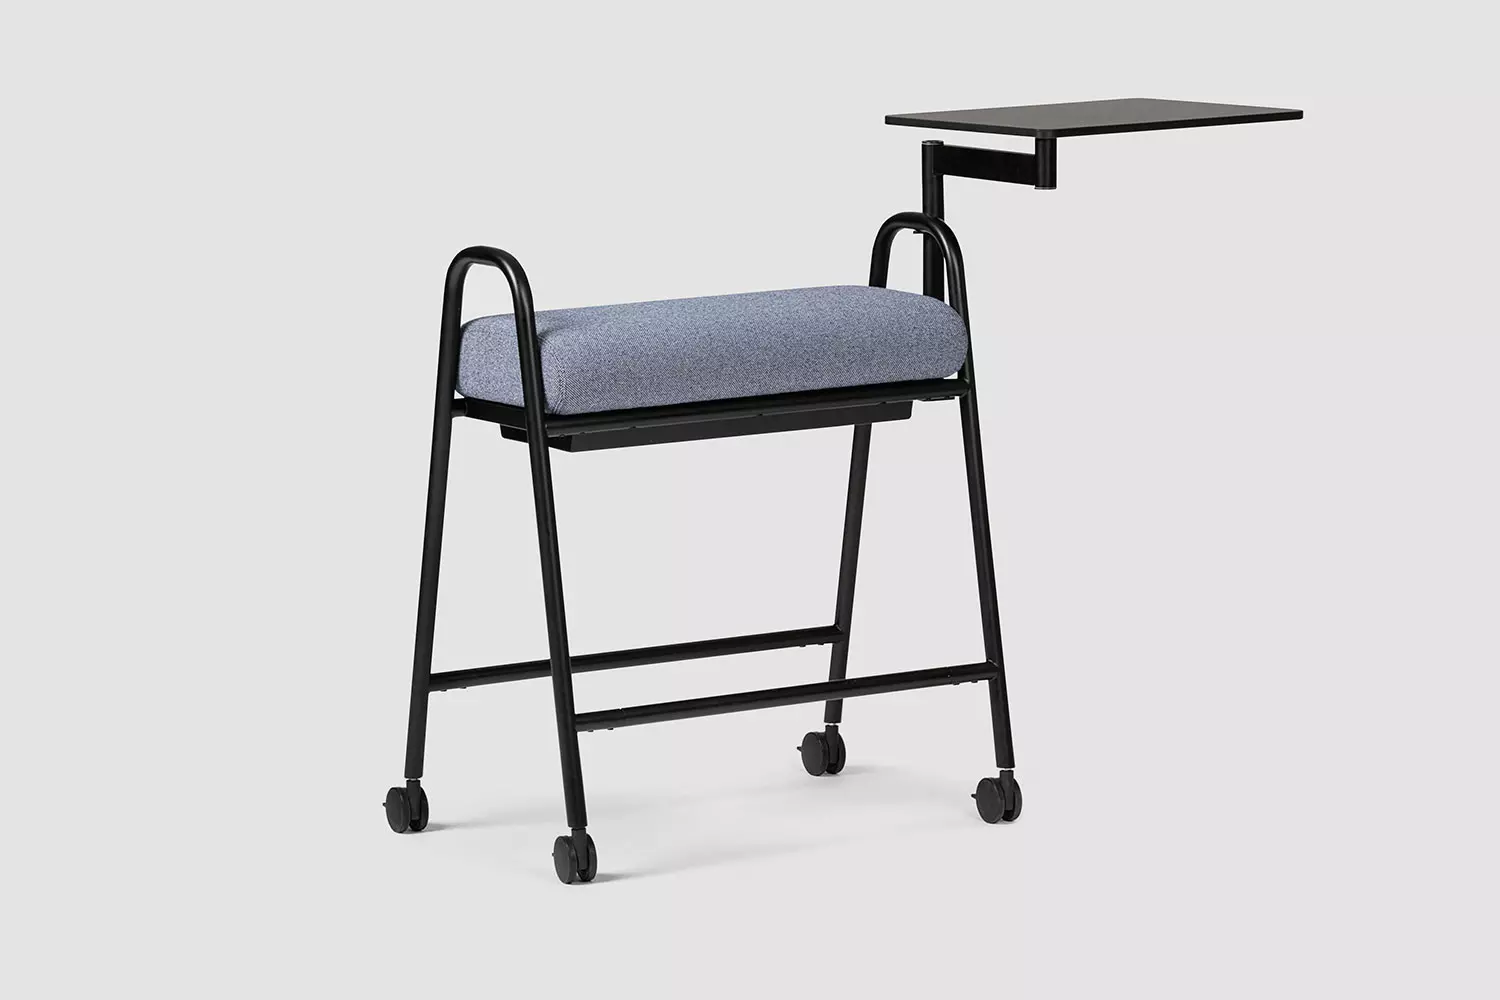 U-TURN,4 leg Upholstered Without armrests swivel base Stool & Pouf, Bene Office furniture, Image 1